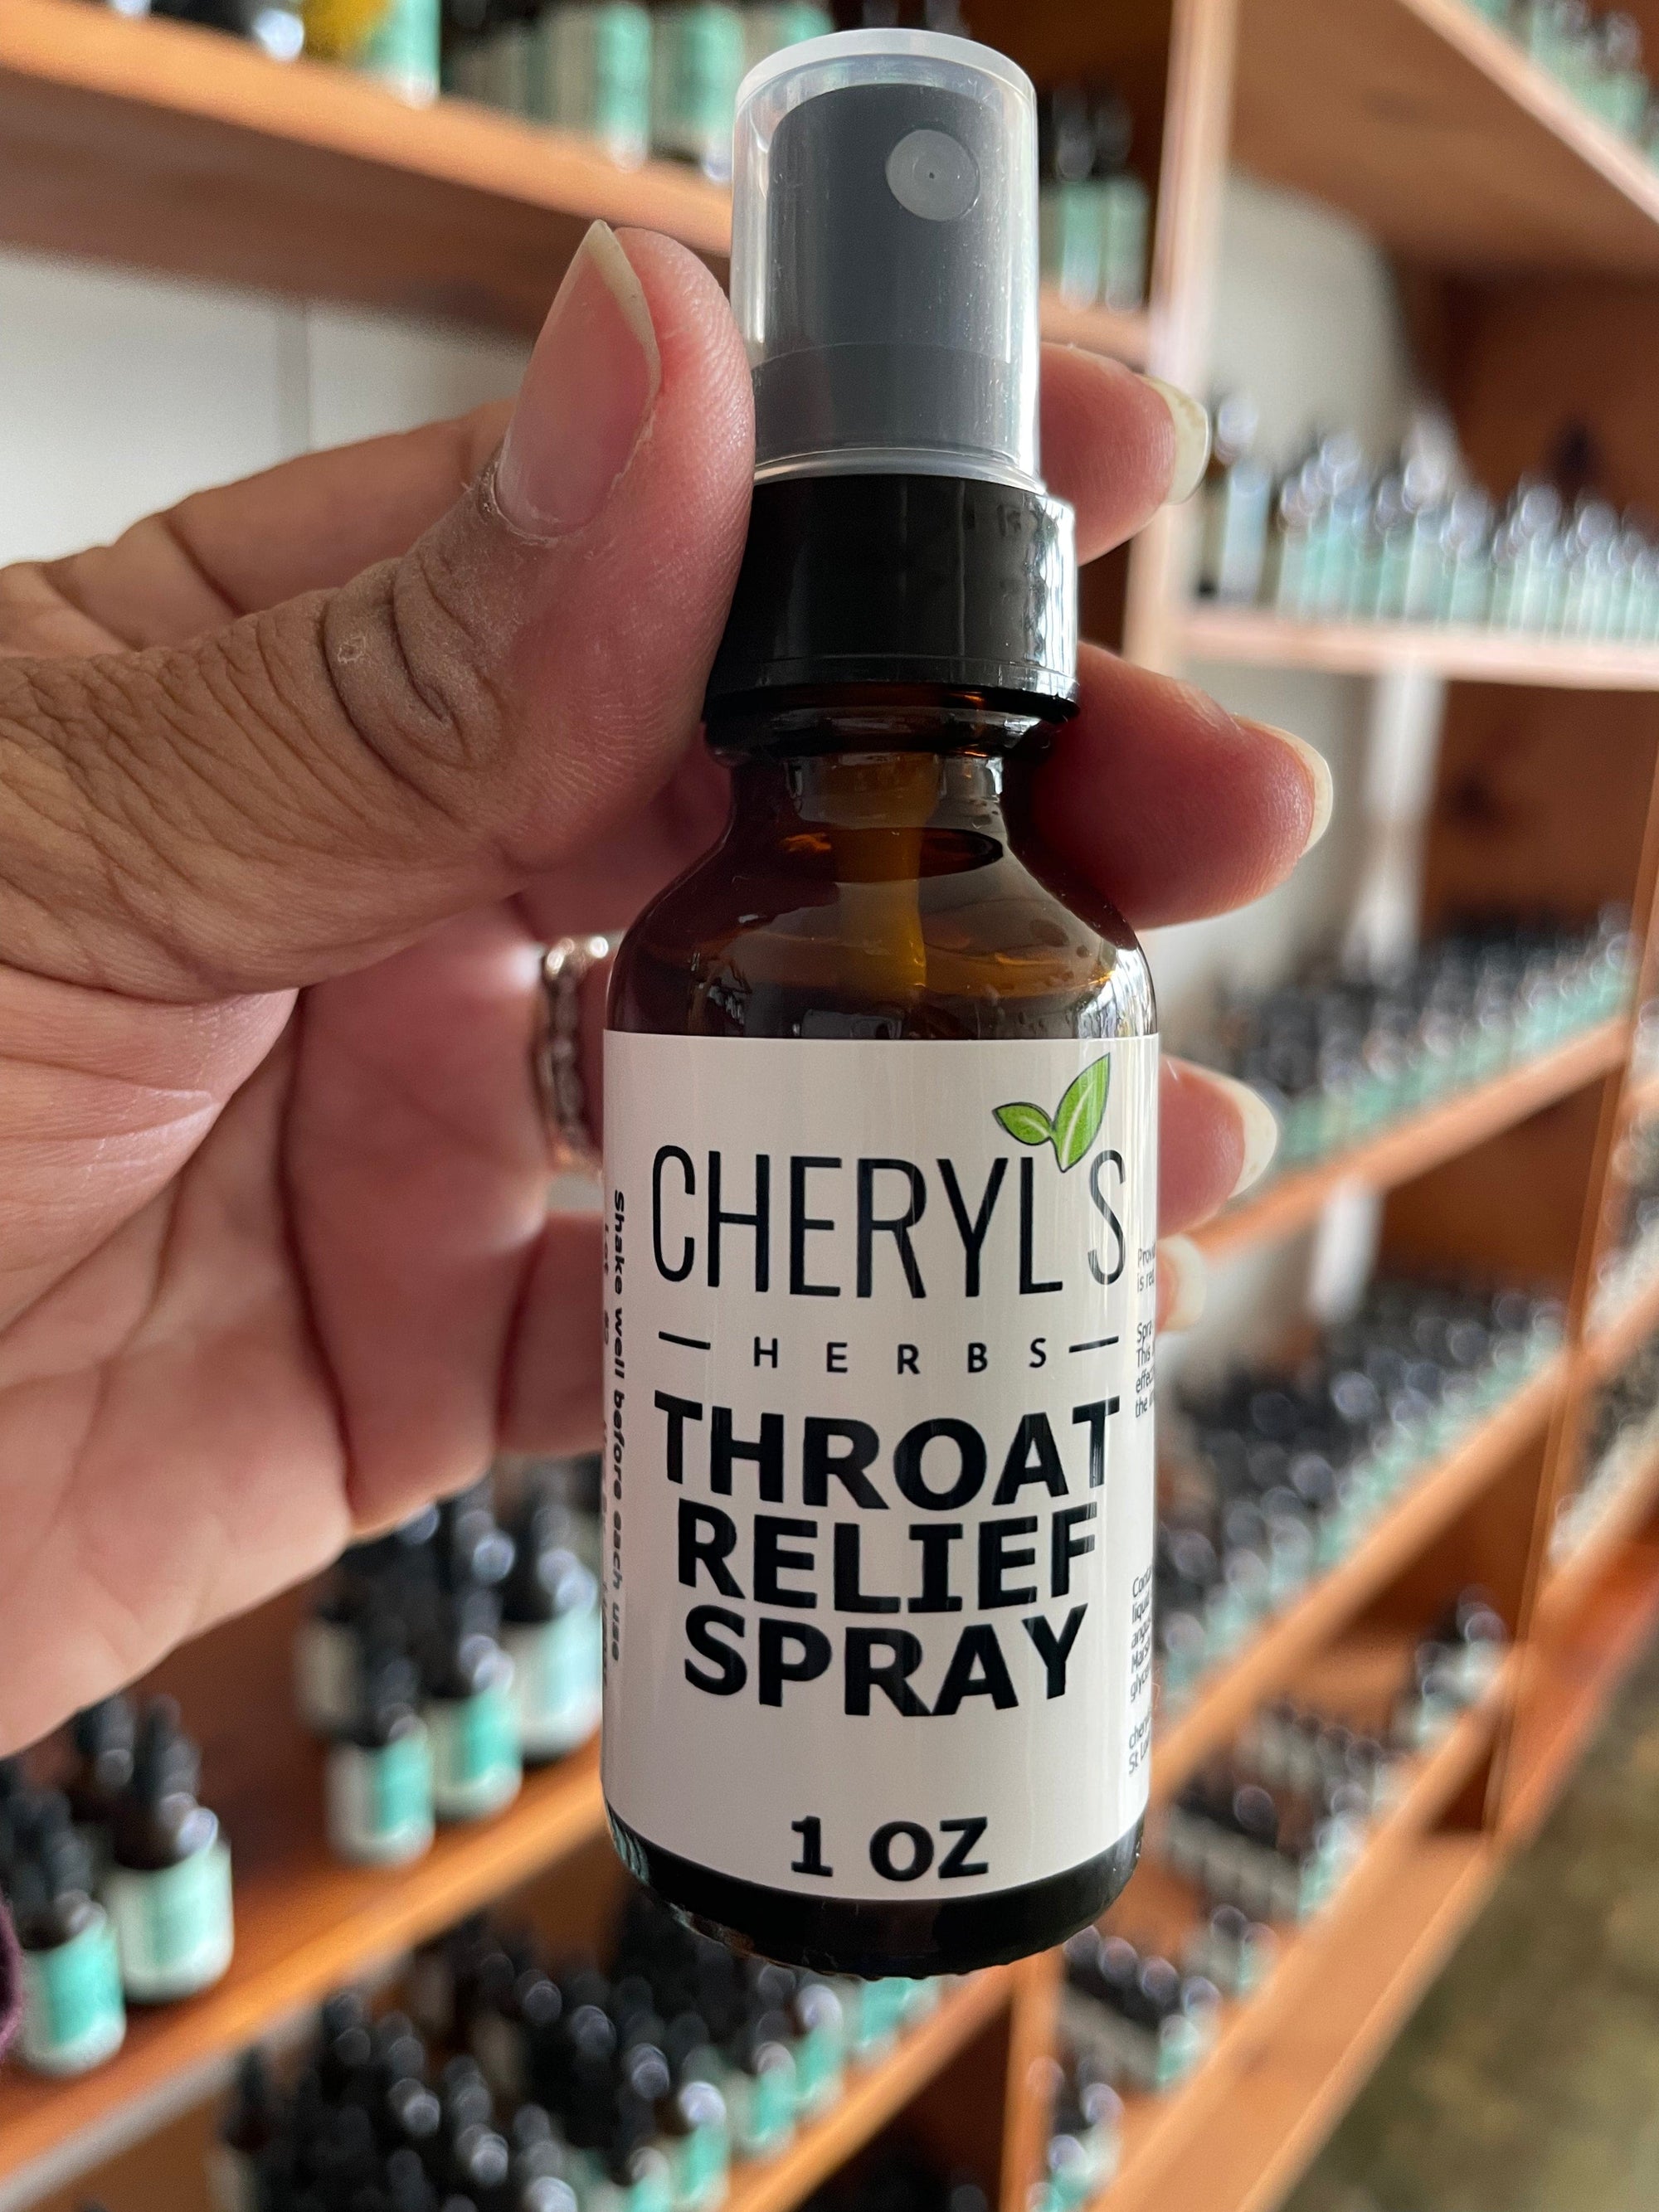 THROAT RELIEF SPRAY - Cheryls Herbs